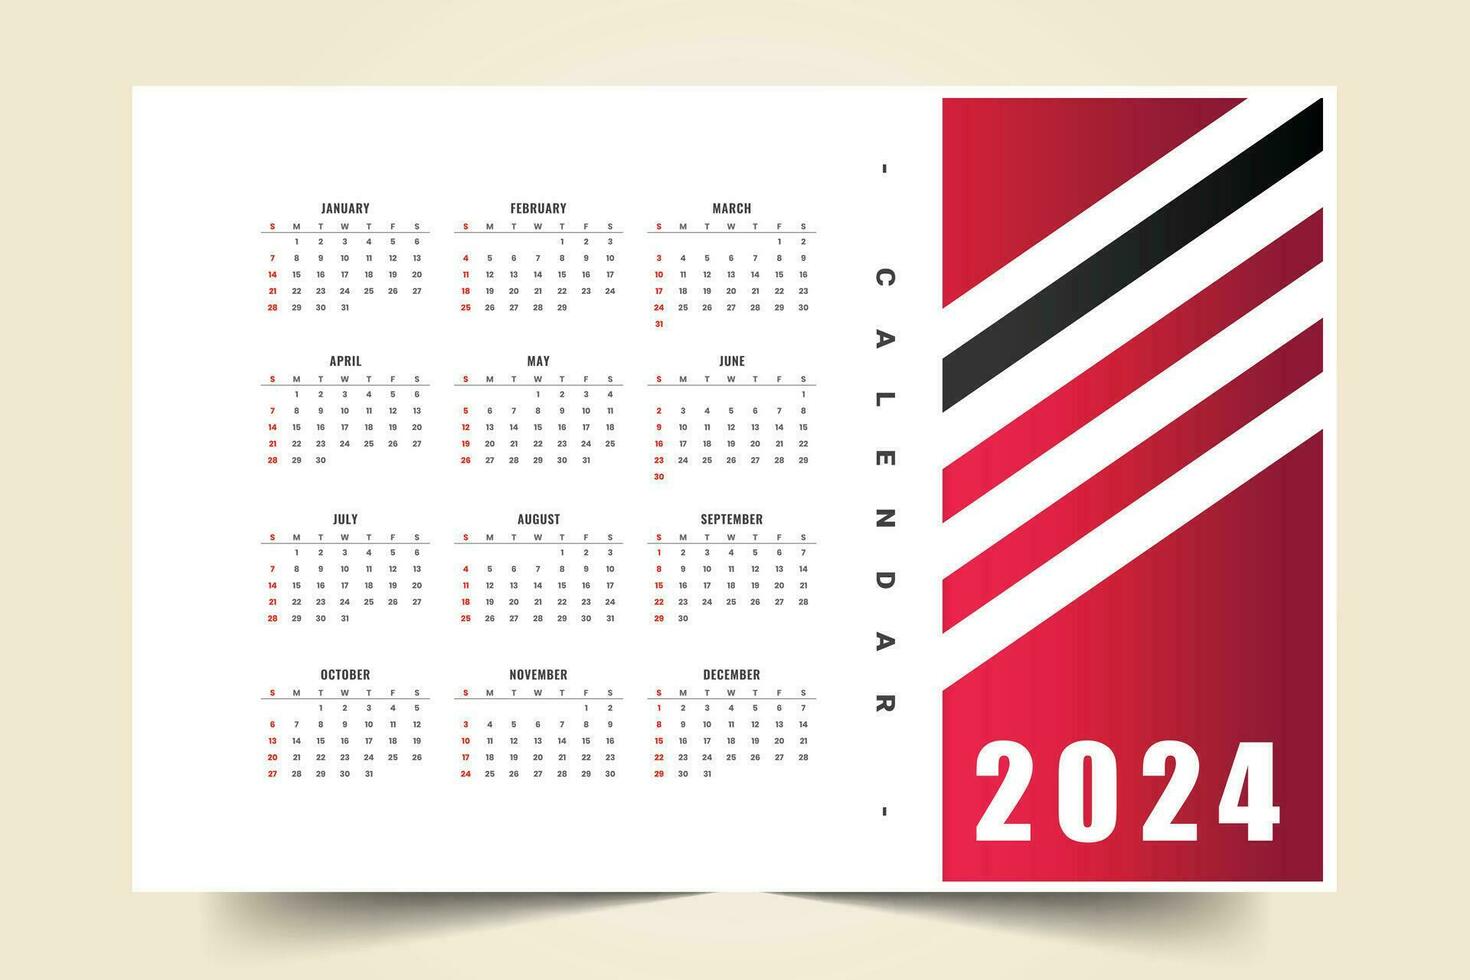 elegante 2024 nuevo año calendario modelo con meses y fechas vector